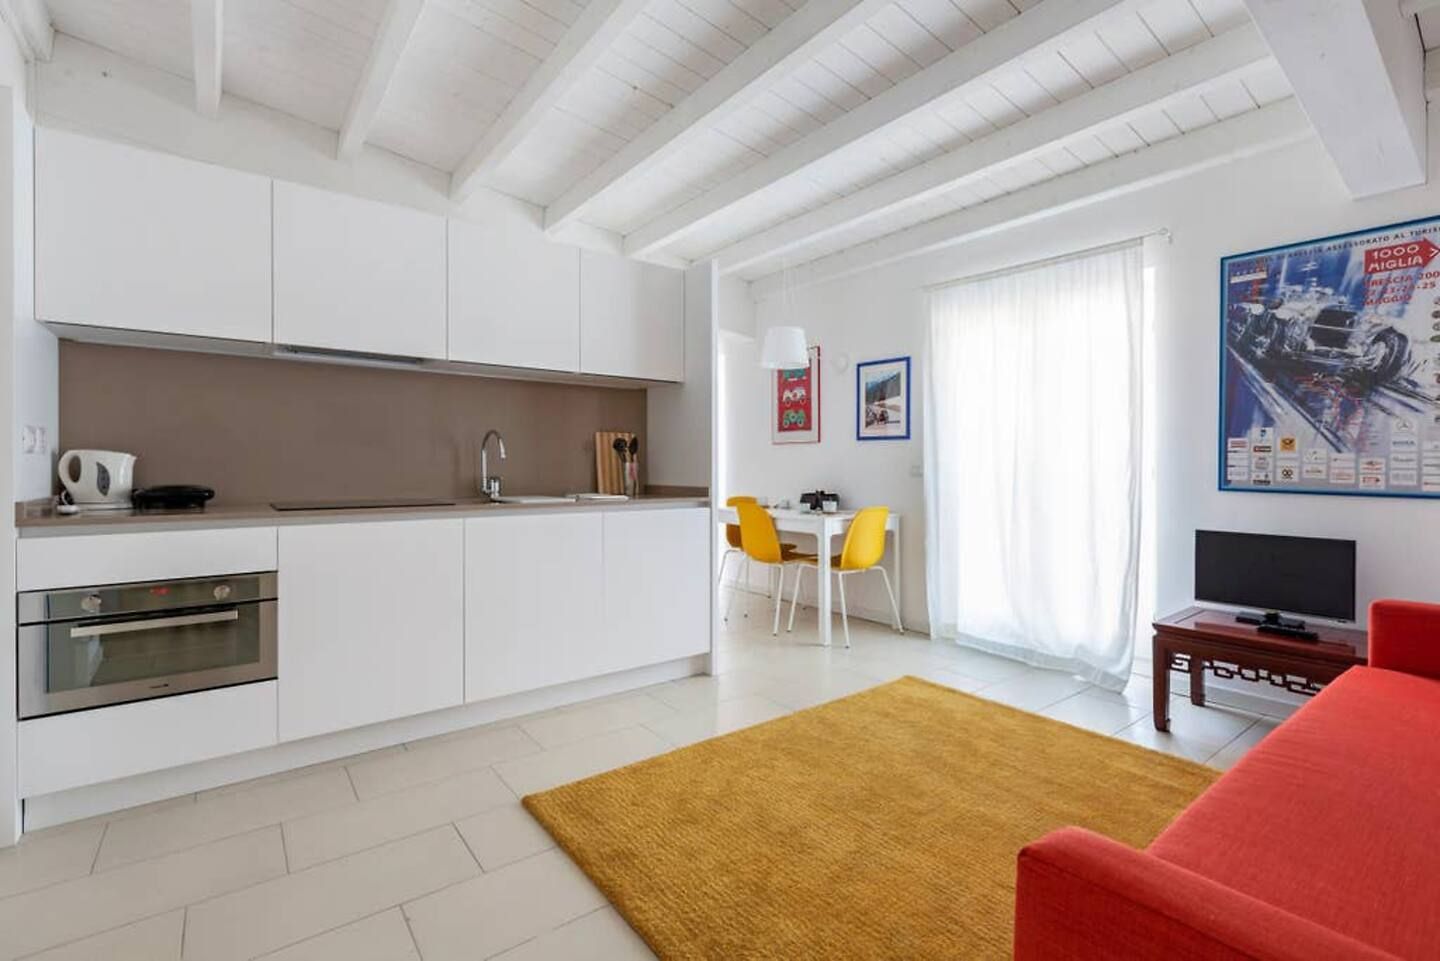 FF - Piccolo appartamento 50 m2 - B&B, Filippo Zuliani Architetto Filippo Zuliani Architetto Salas modernas Cerámico